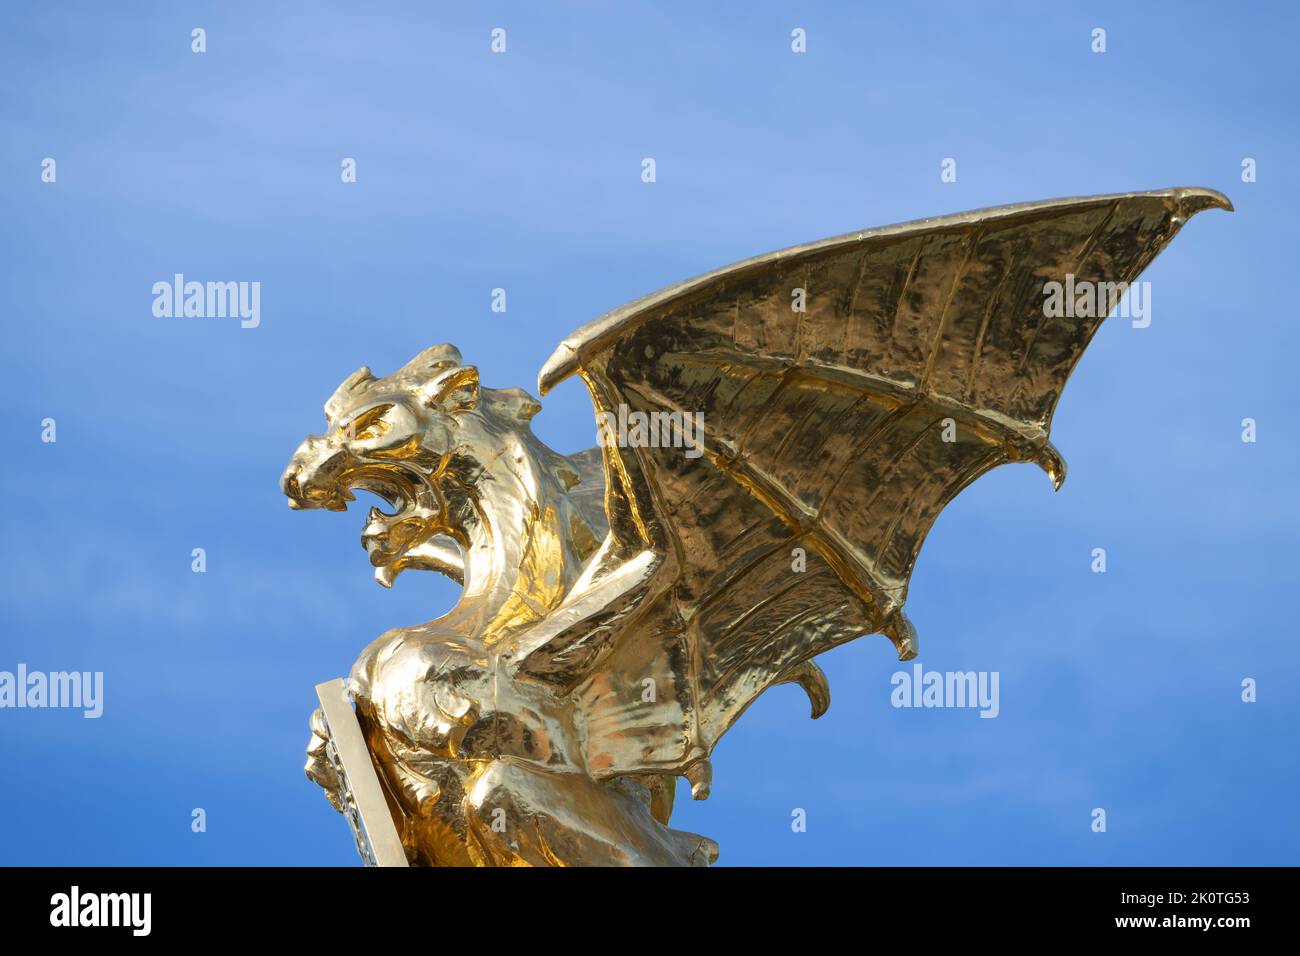 Un dragon doré au sommet d'une fontaine à Den Bosch. Il a été placé en 1903 au croisement de 'Stationsweg' et 'Koninginnelaan'. Banque D'Images